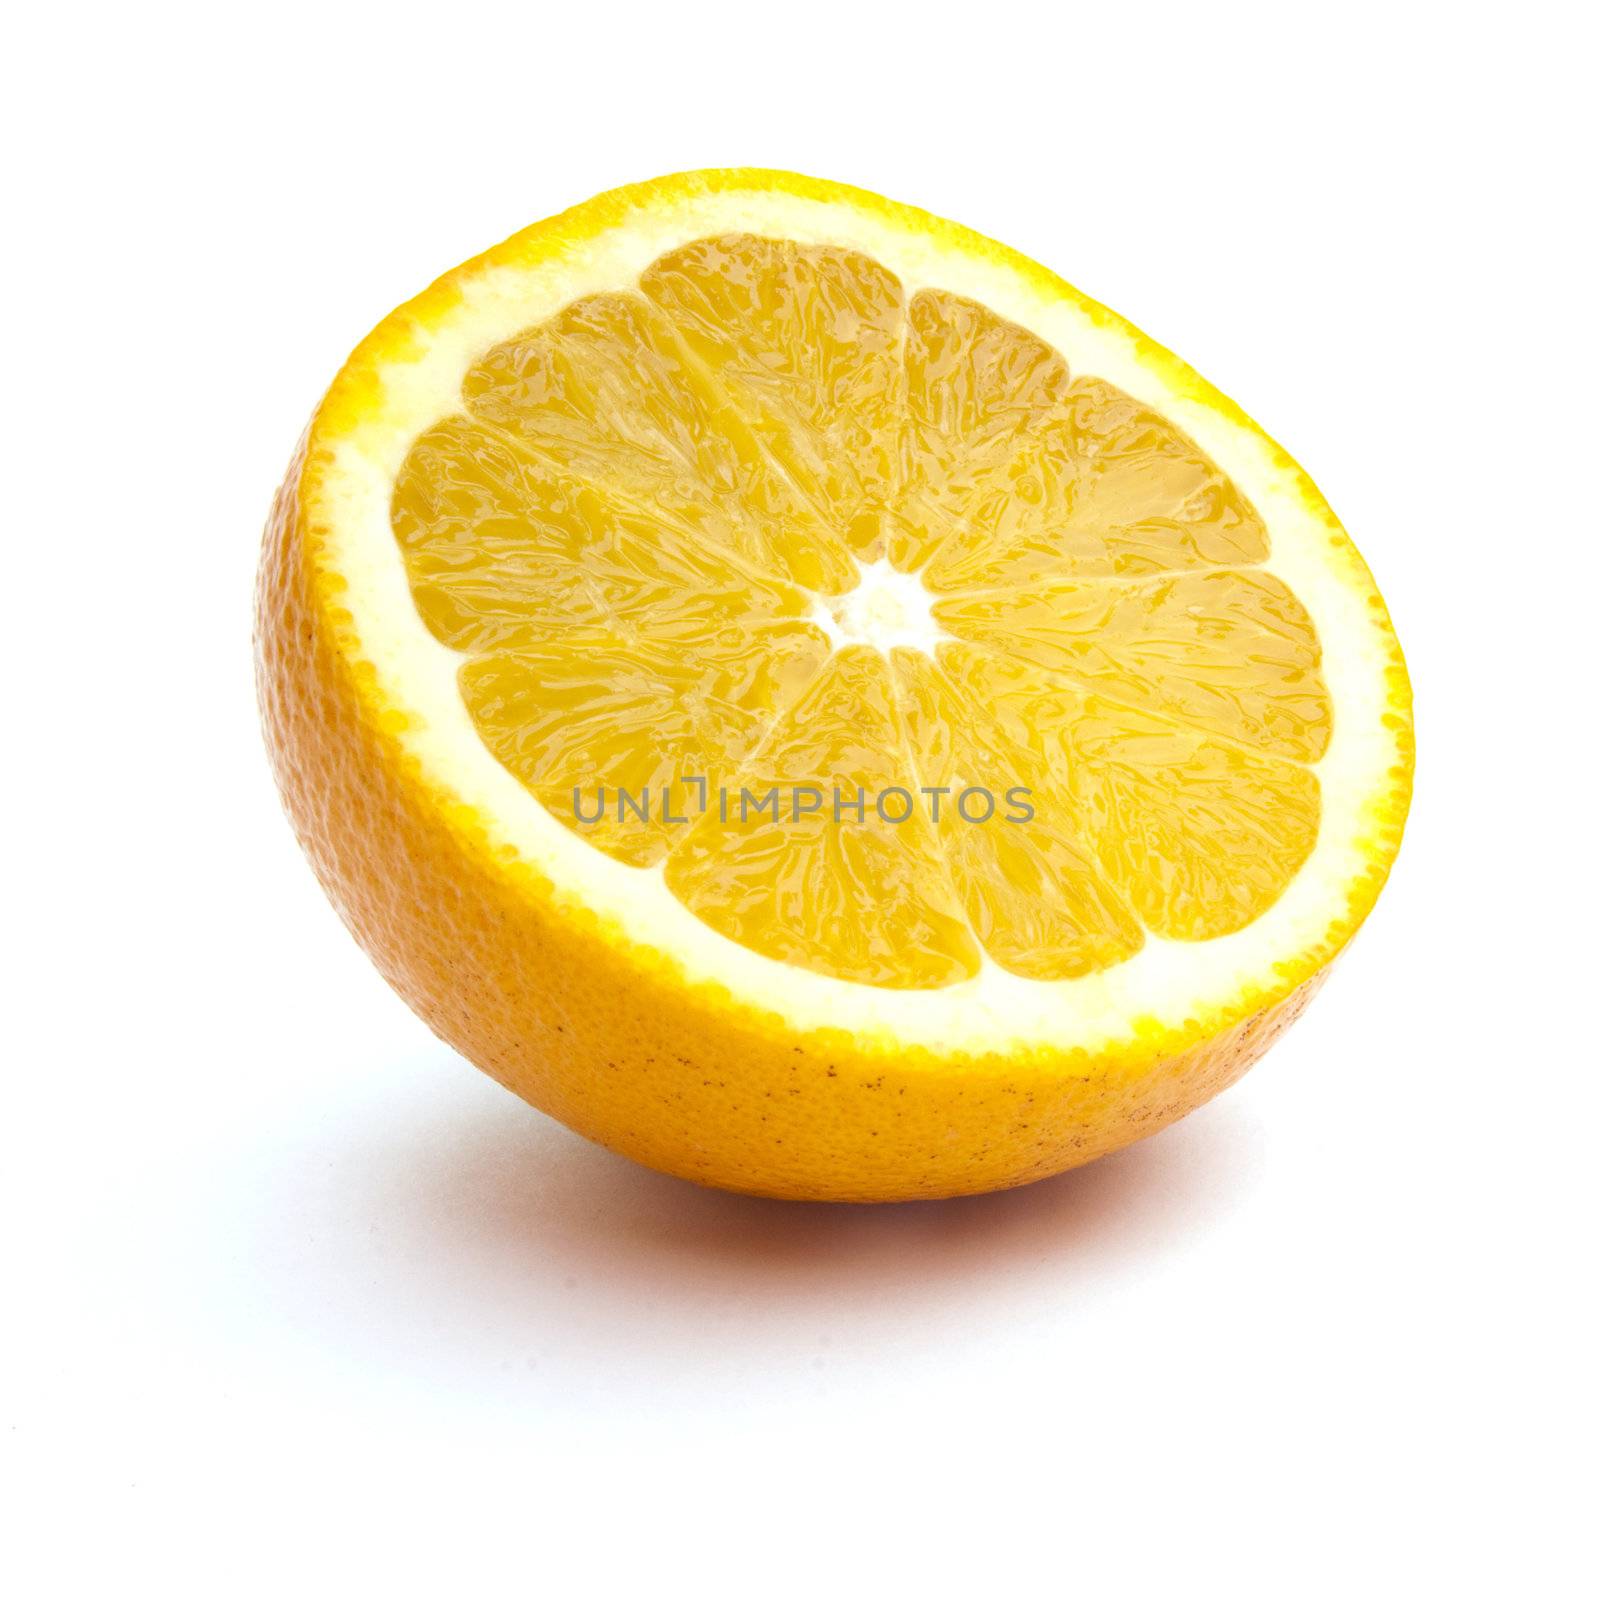 Orange by adamr